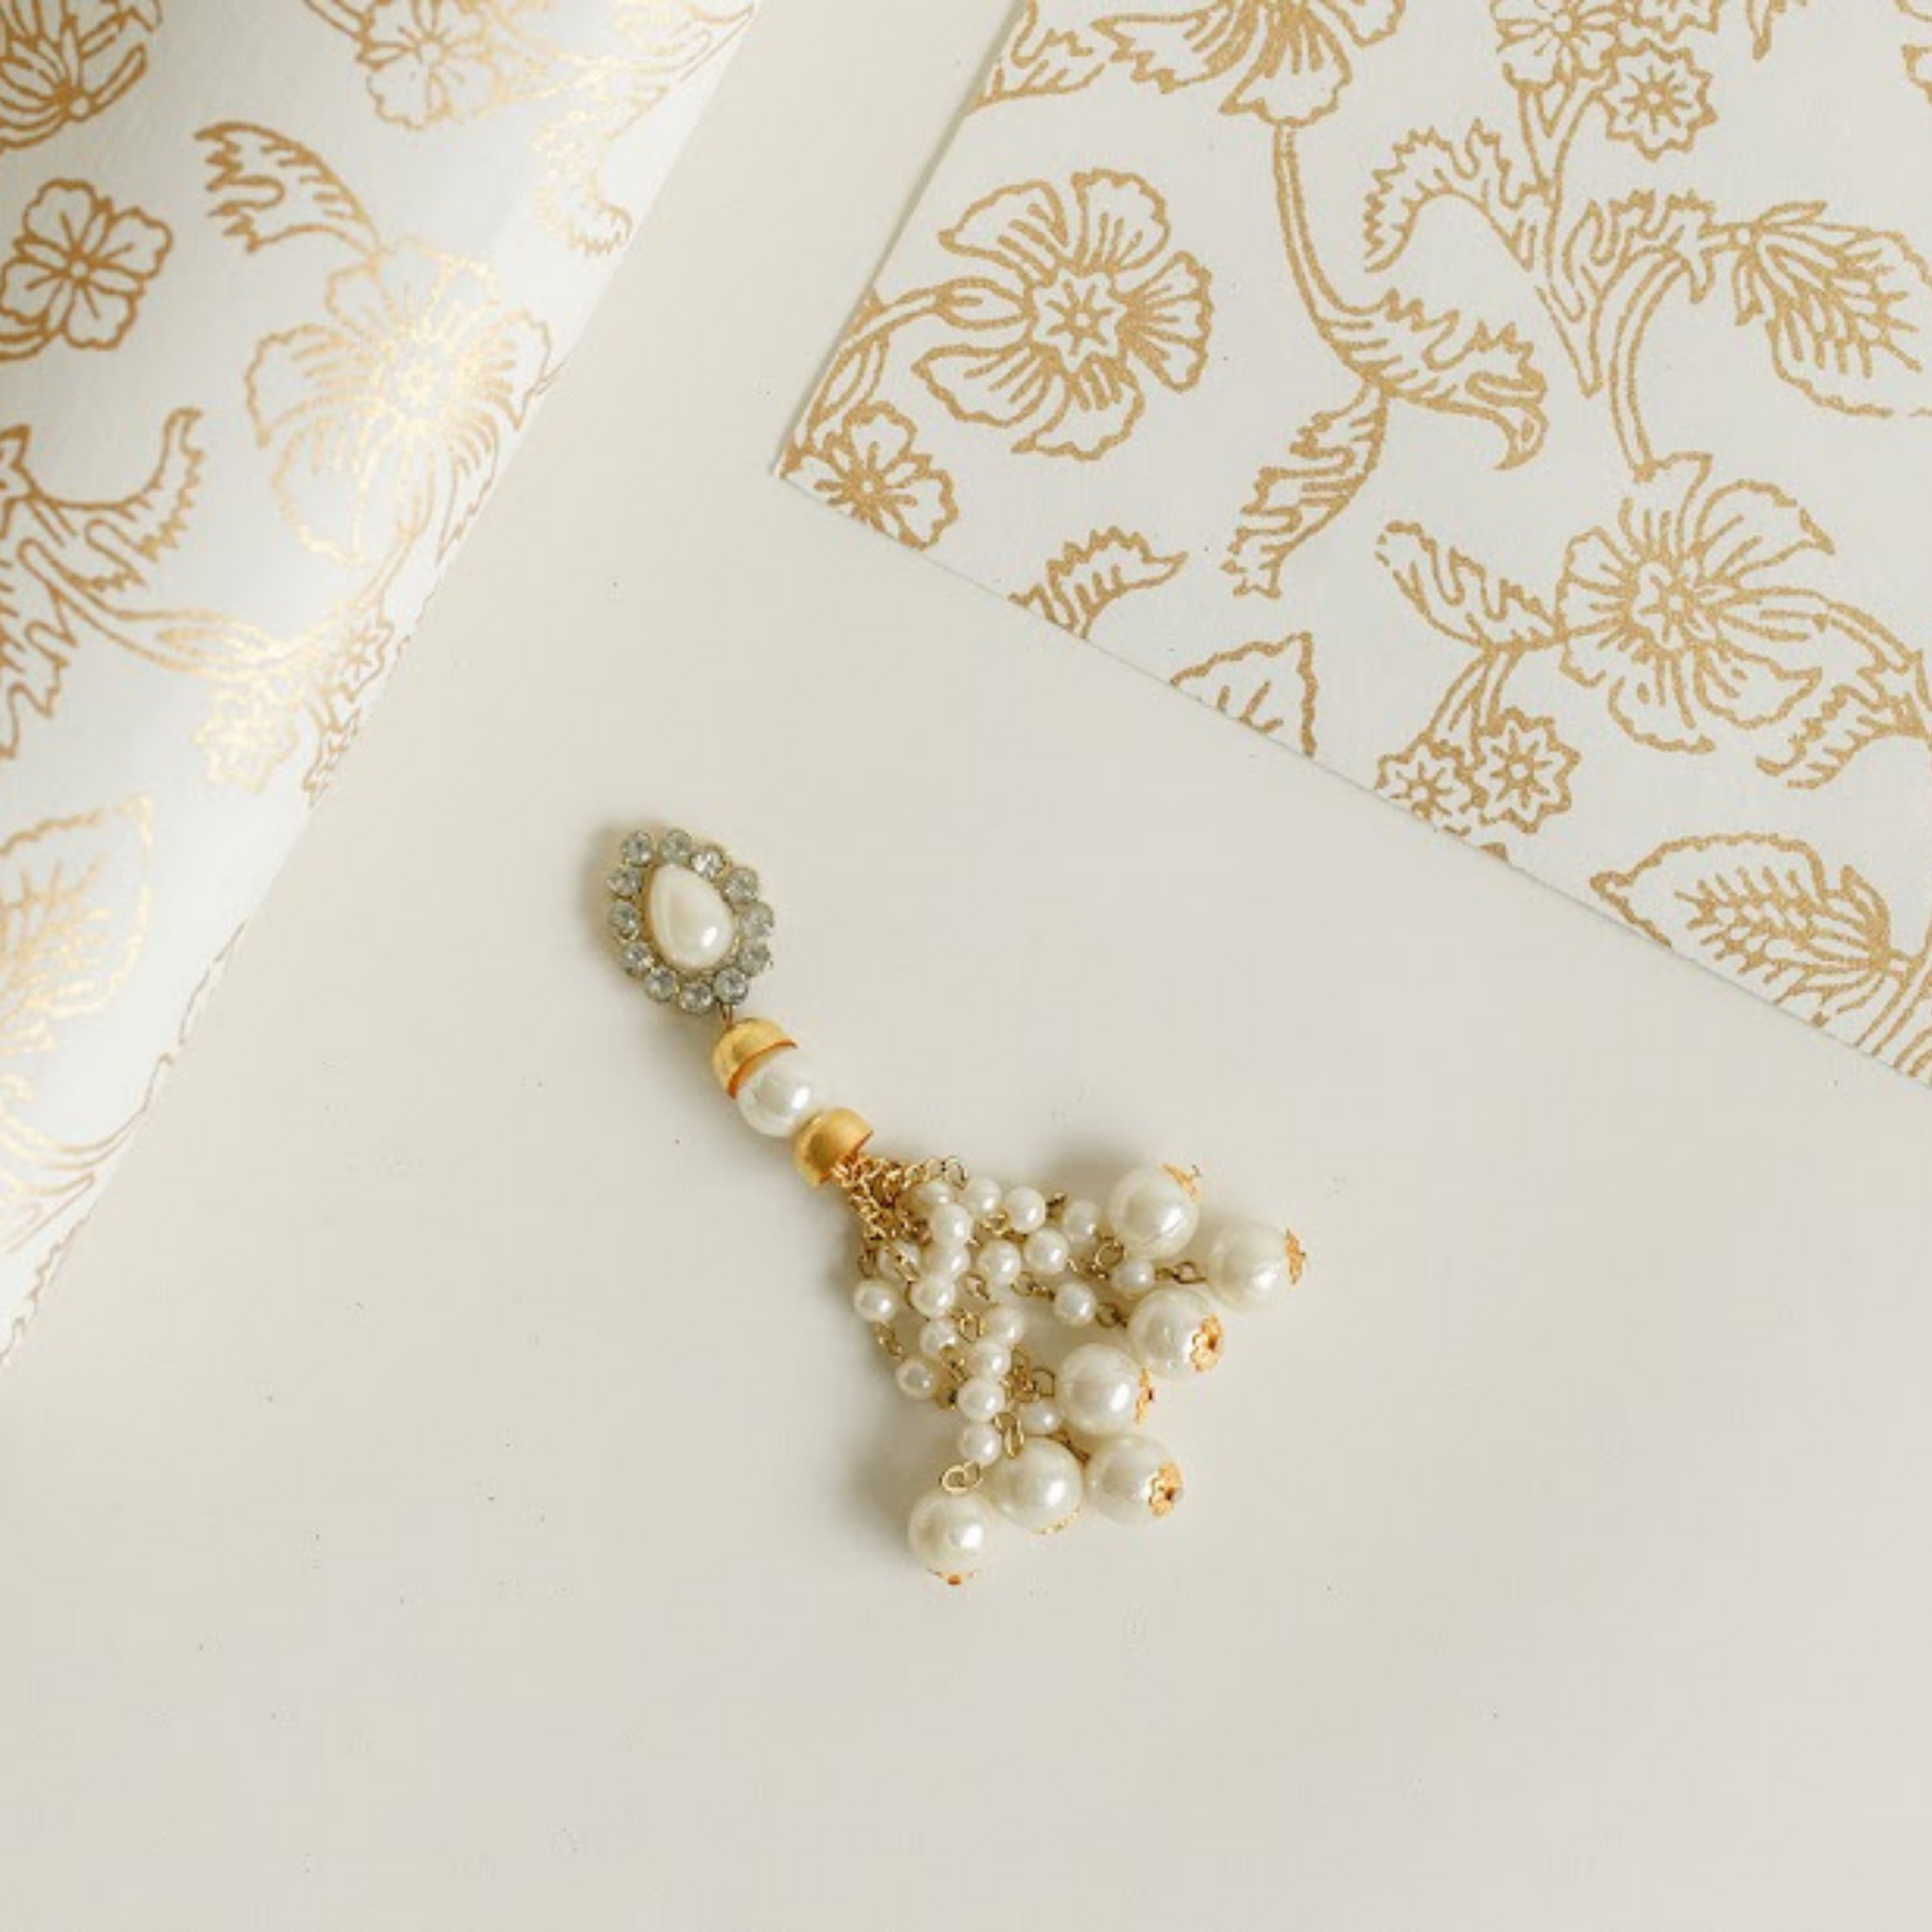 Ivory wedding gift wrap 